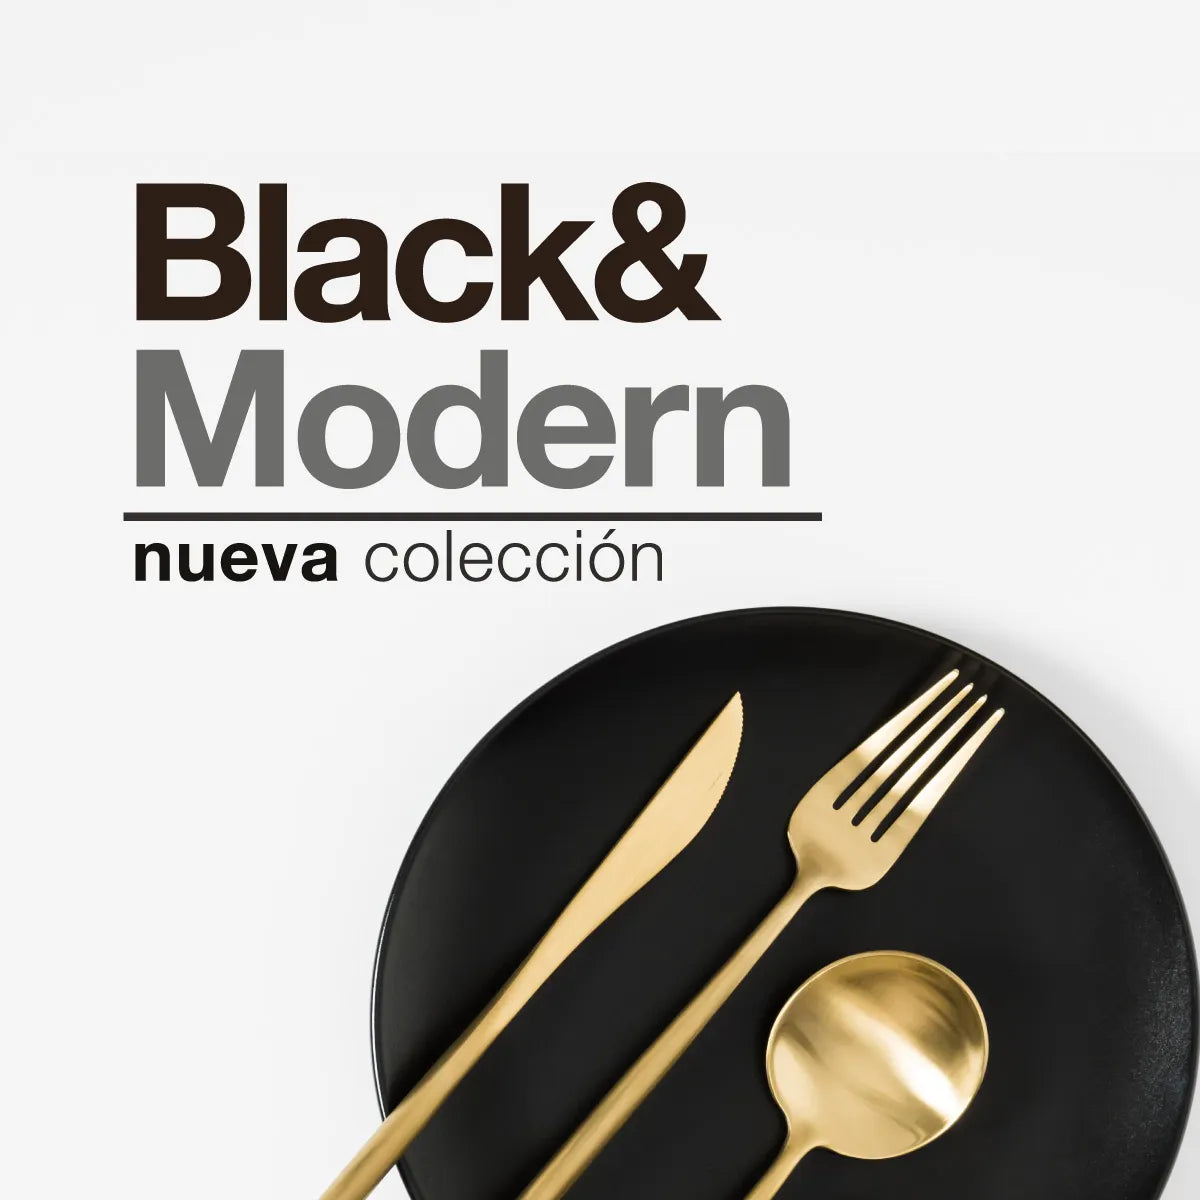 Black & Modern